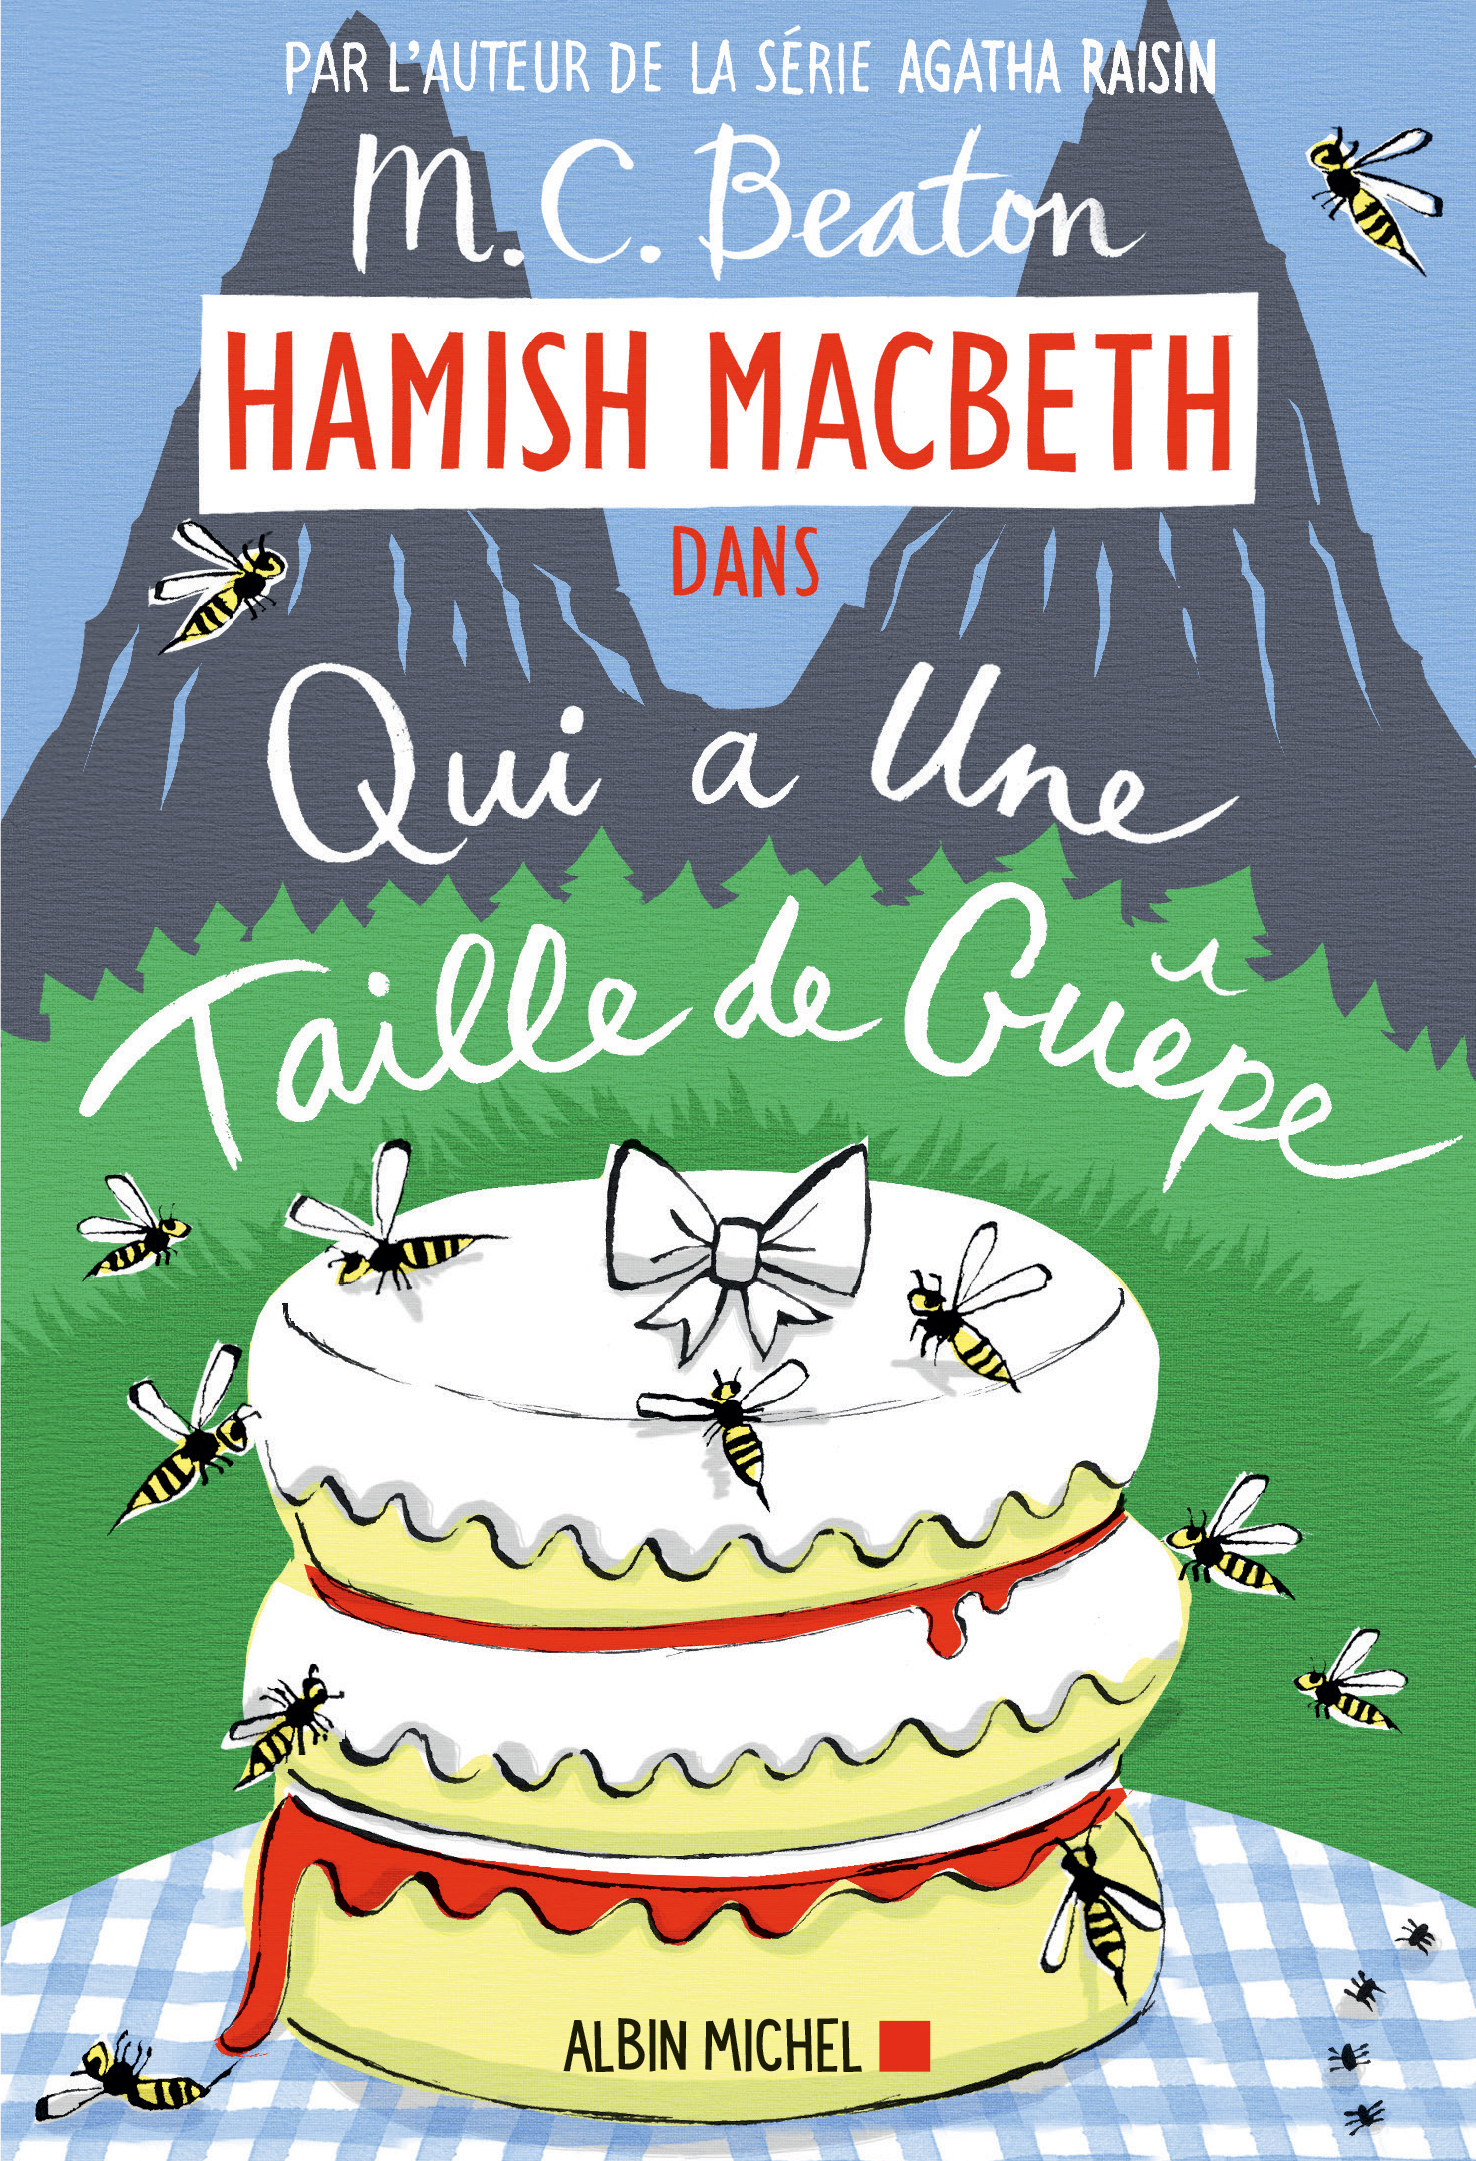 Couverture du livre Hamish Macbeth 4 - Qui a une taille de guêpe